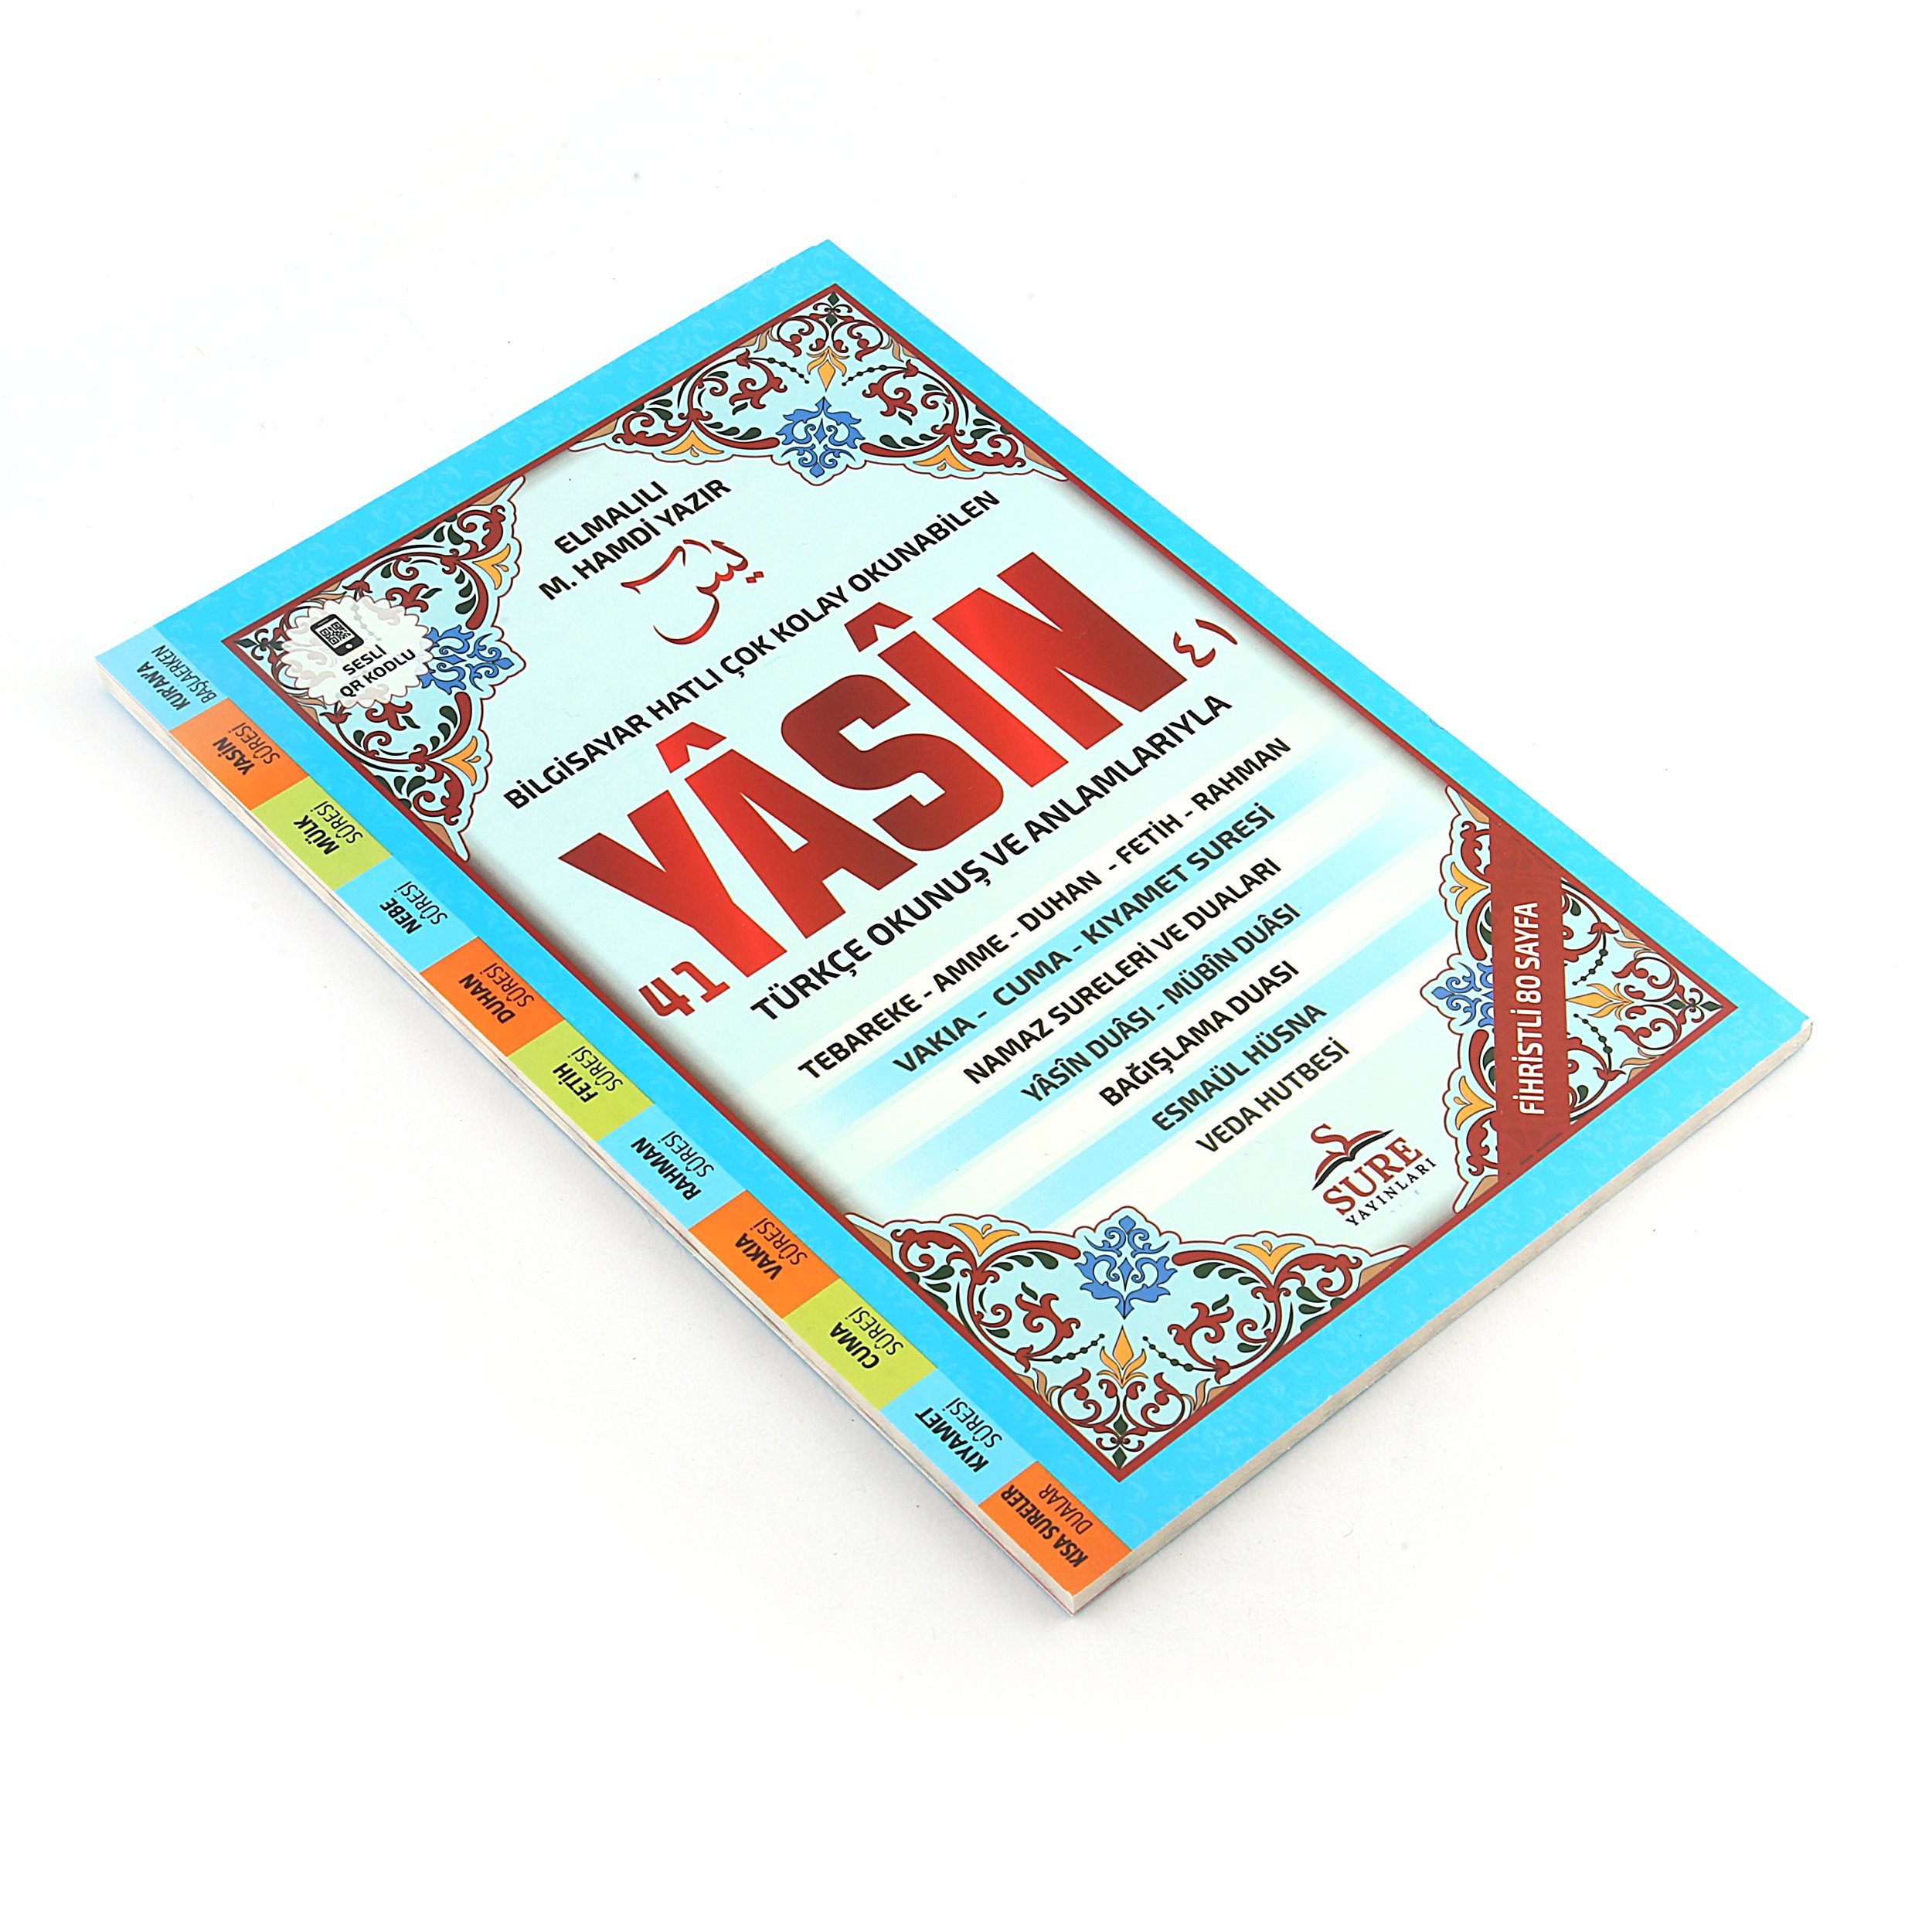 17x25 Cm 3 Farklı Renk Seçeneği 80 Sayfa Dergi Boy Türkçe/Arapça Yasin Kitabı